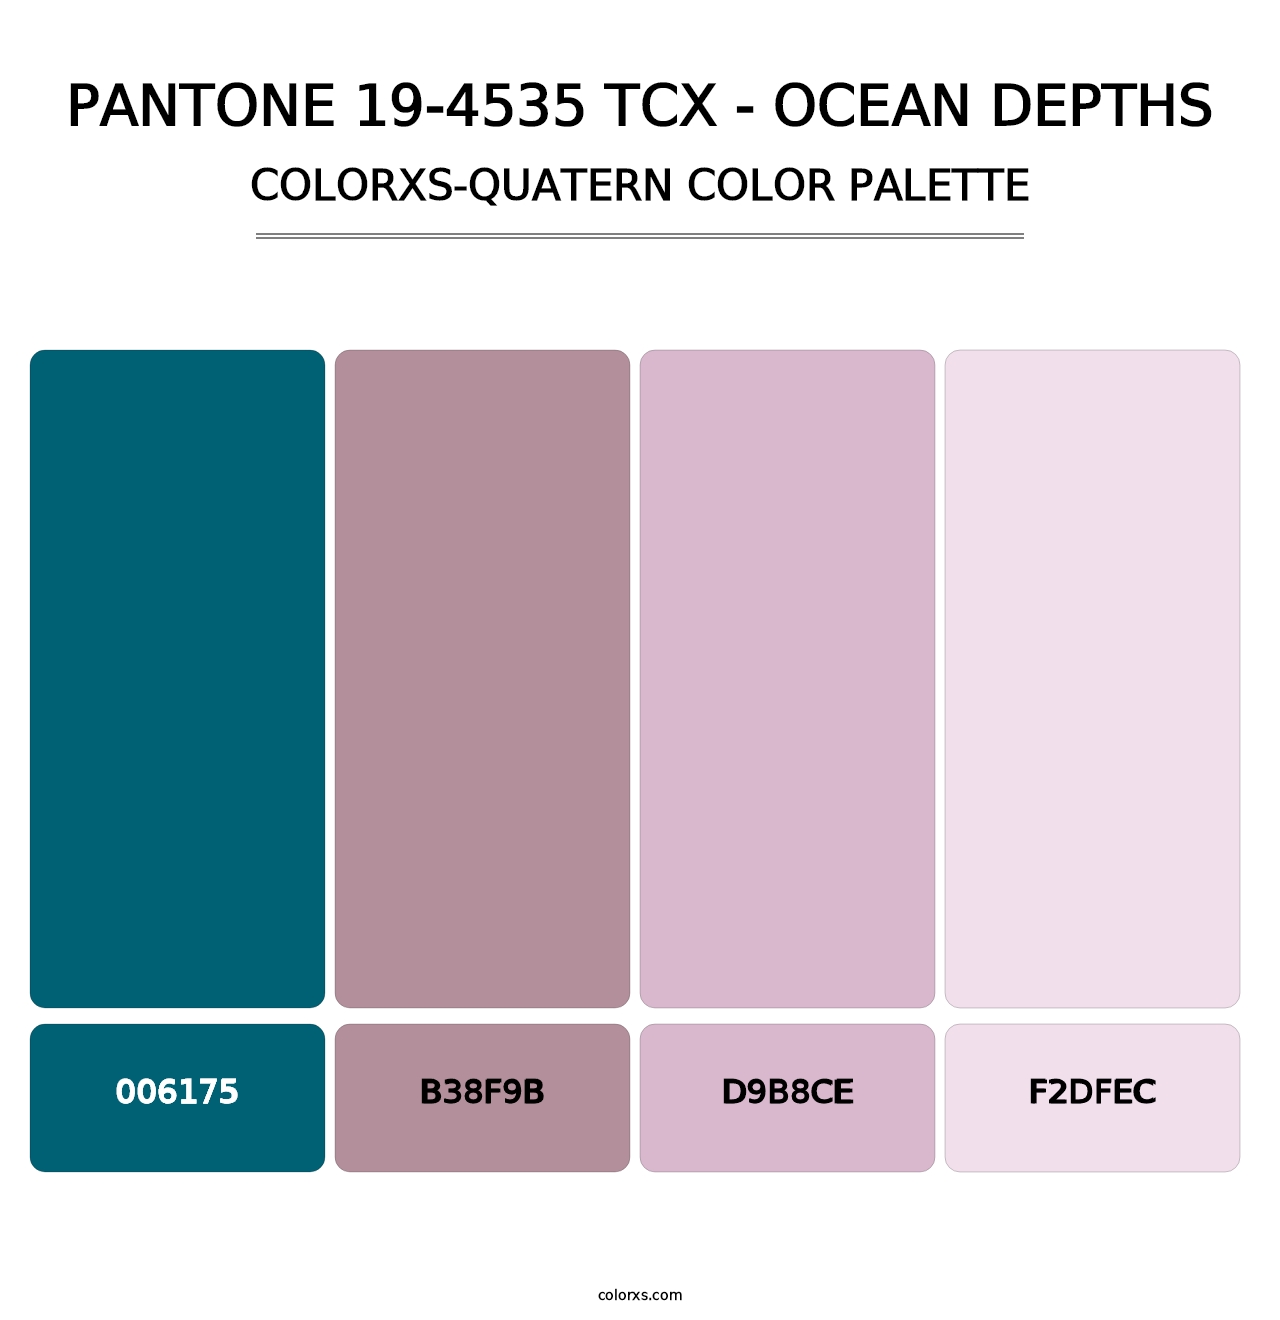 PANTONE 19-4535 TCX - Ocean Depths - Colorxs Quatern Palette